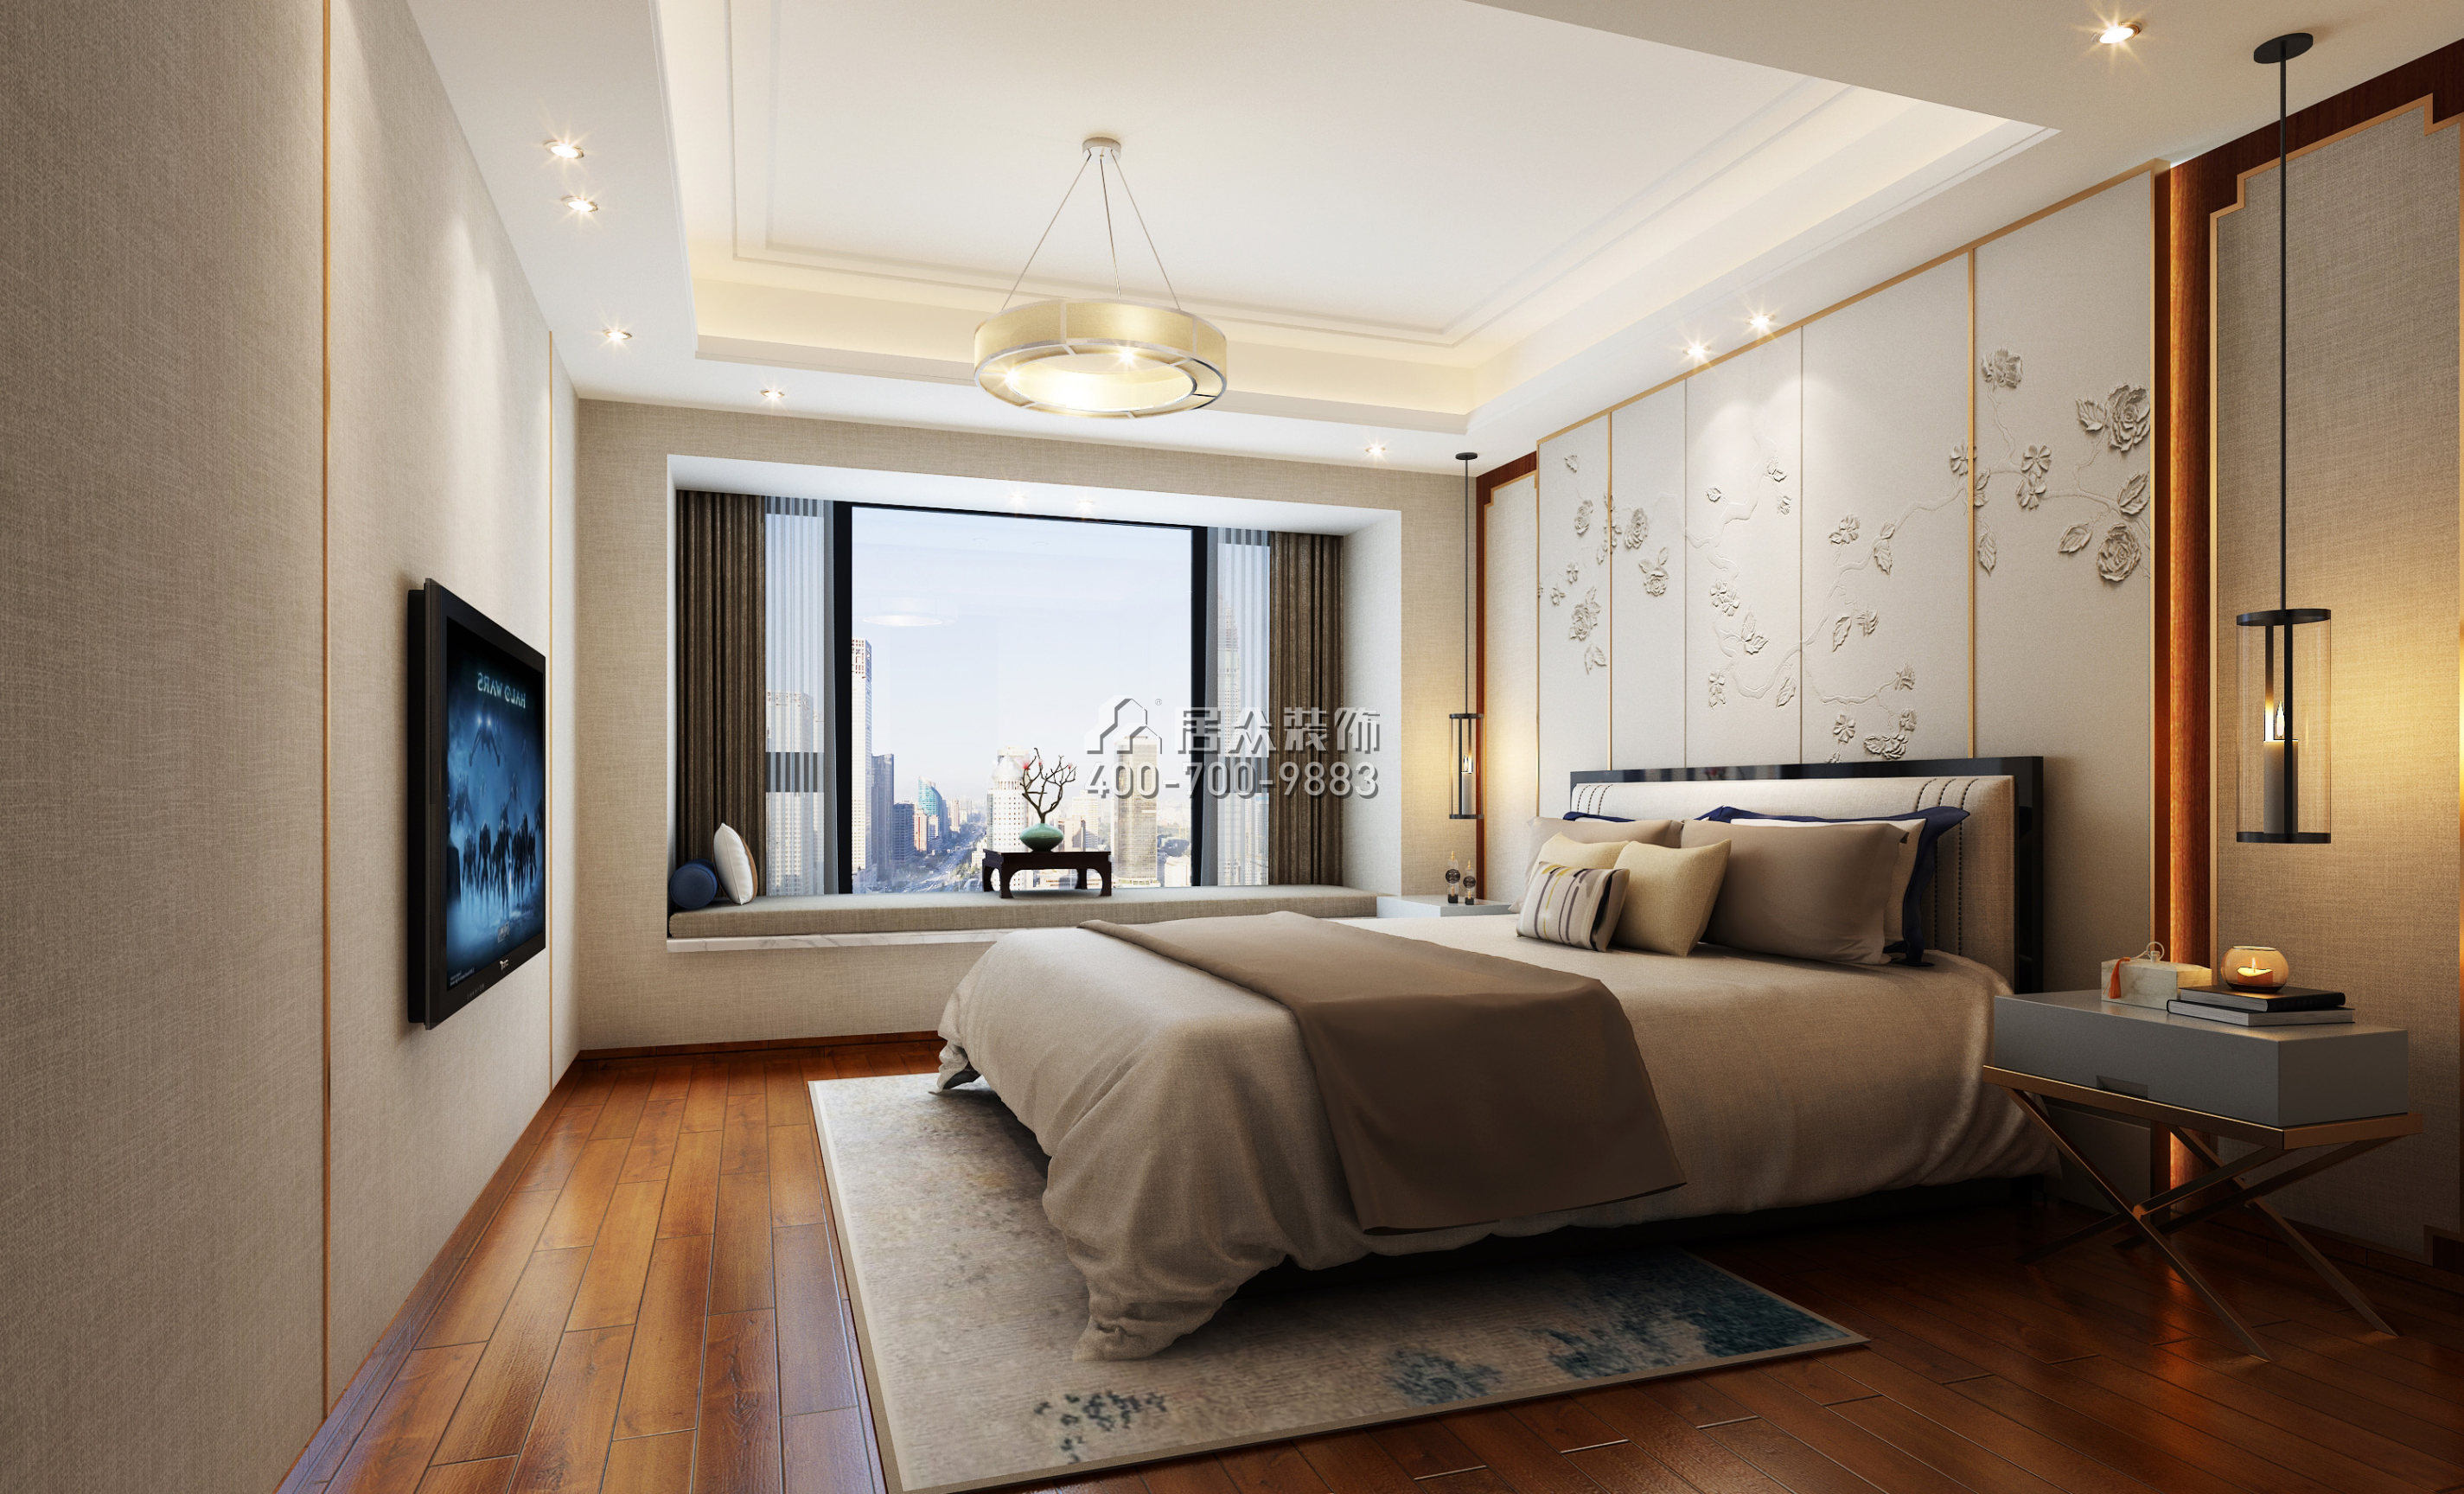 香山里花园四期170平方米中式风格平层户型卧室装修效果图